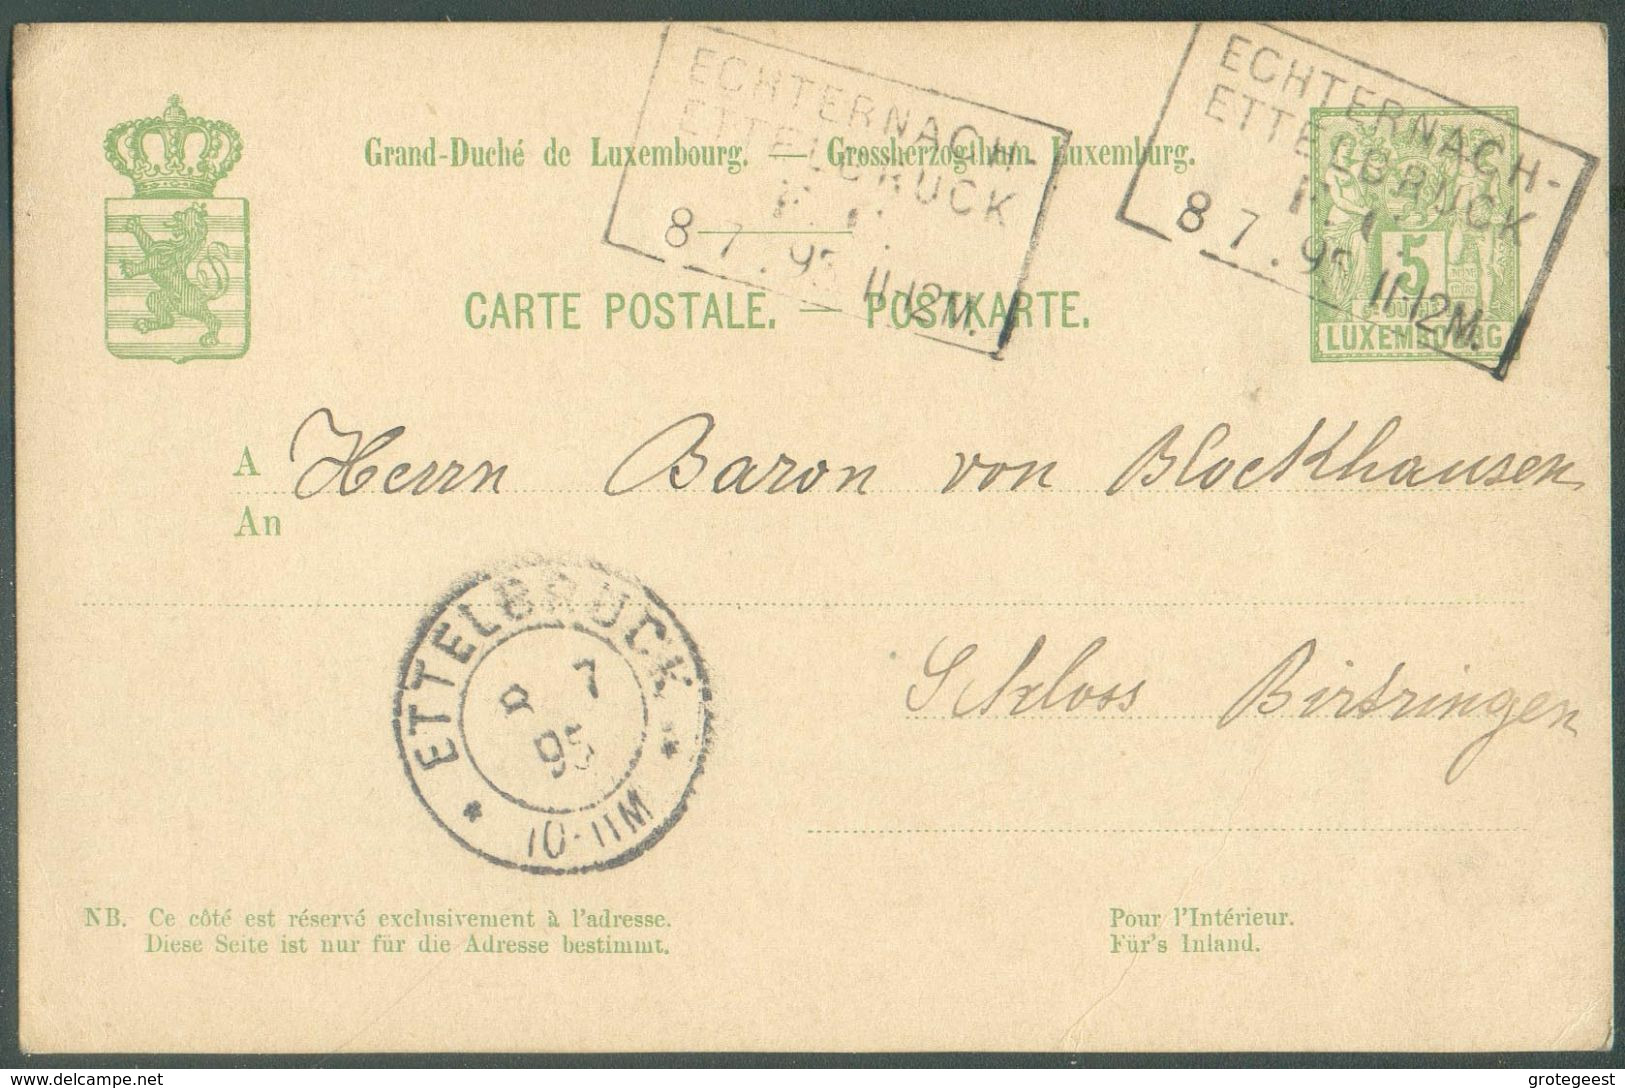 E.P. Carte 5 Centimes Obl. Griffe AMBULANT ECHTERNACH-ETTELBRUCK Du 8/07/1895 Vers Birtrange - 15988 - Entiers Postaux